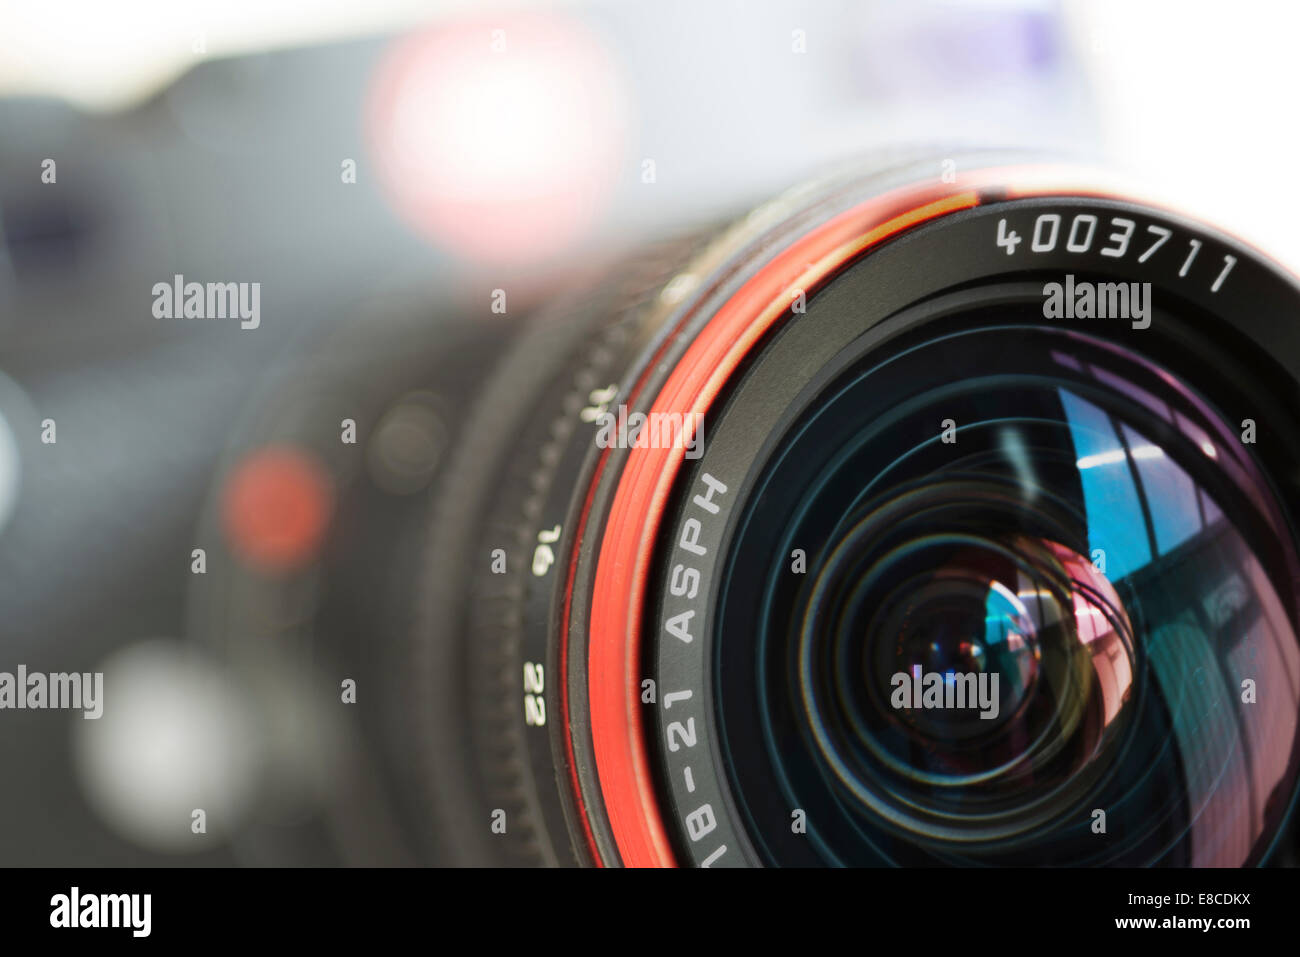 Leica lens closeup Stock Photo